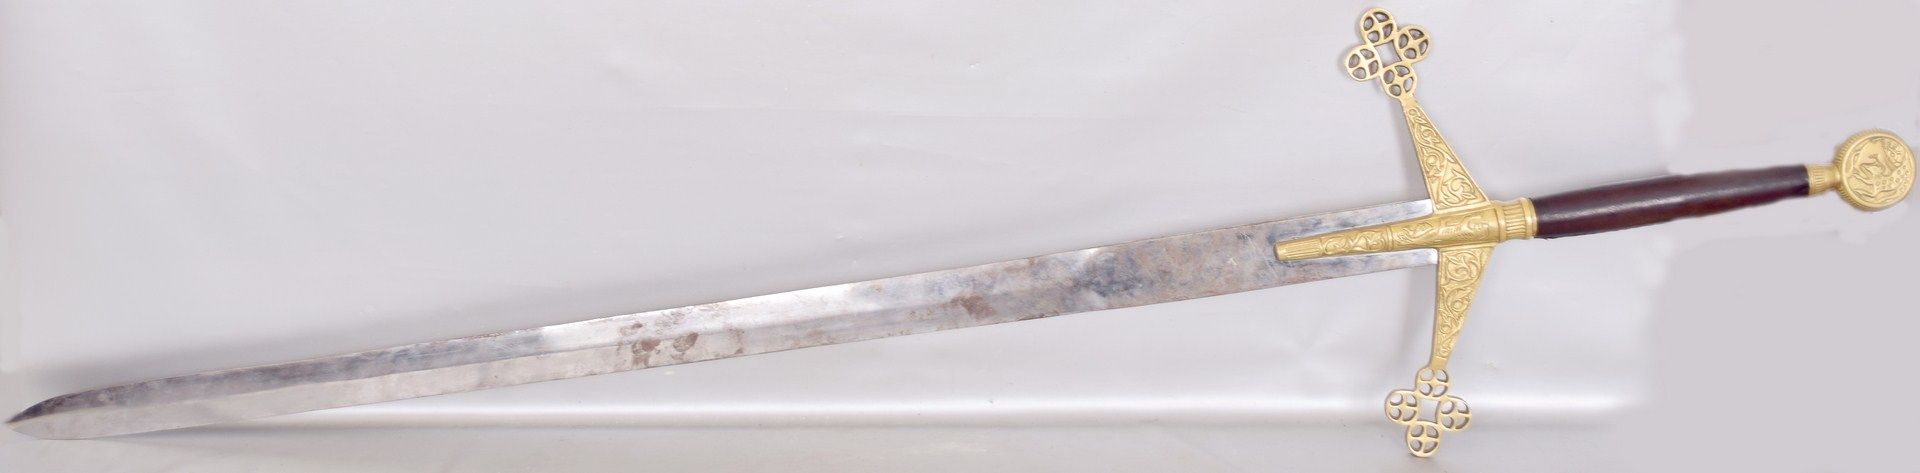 Zierschwertverziertes Messing mit Holzgriff, L 142 cm, Replika